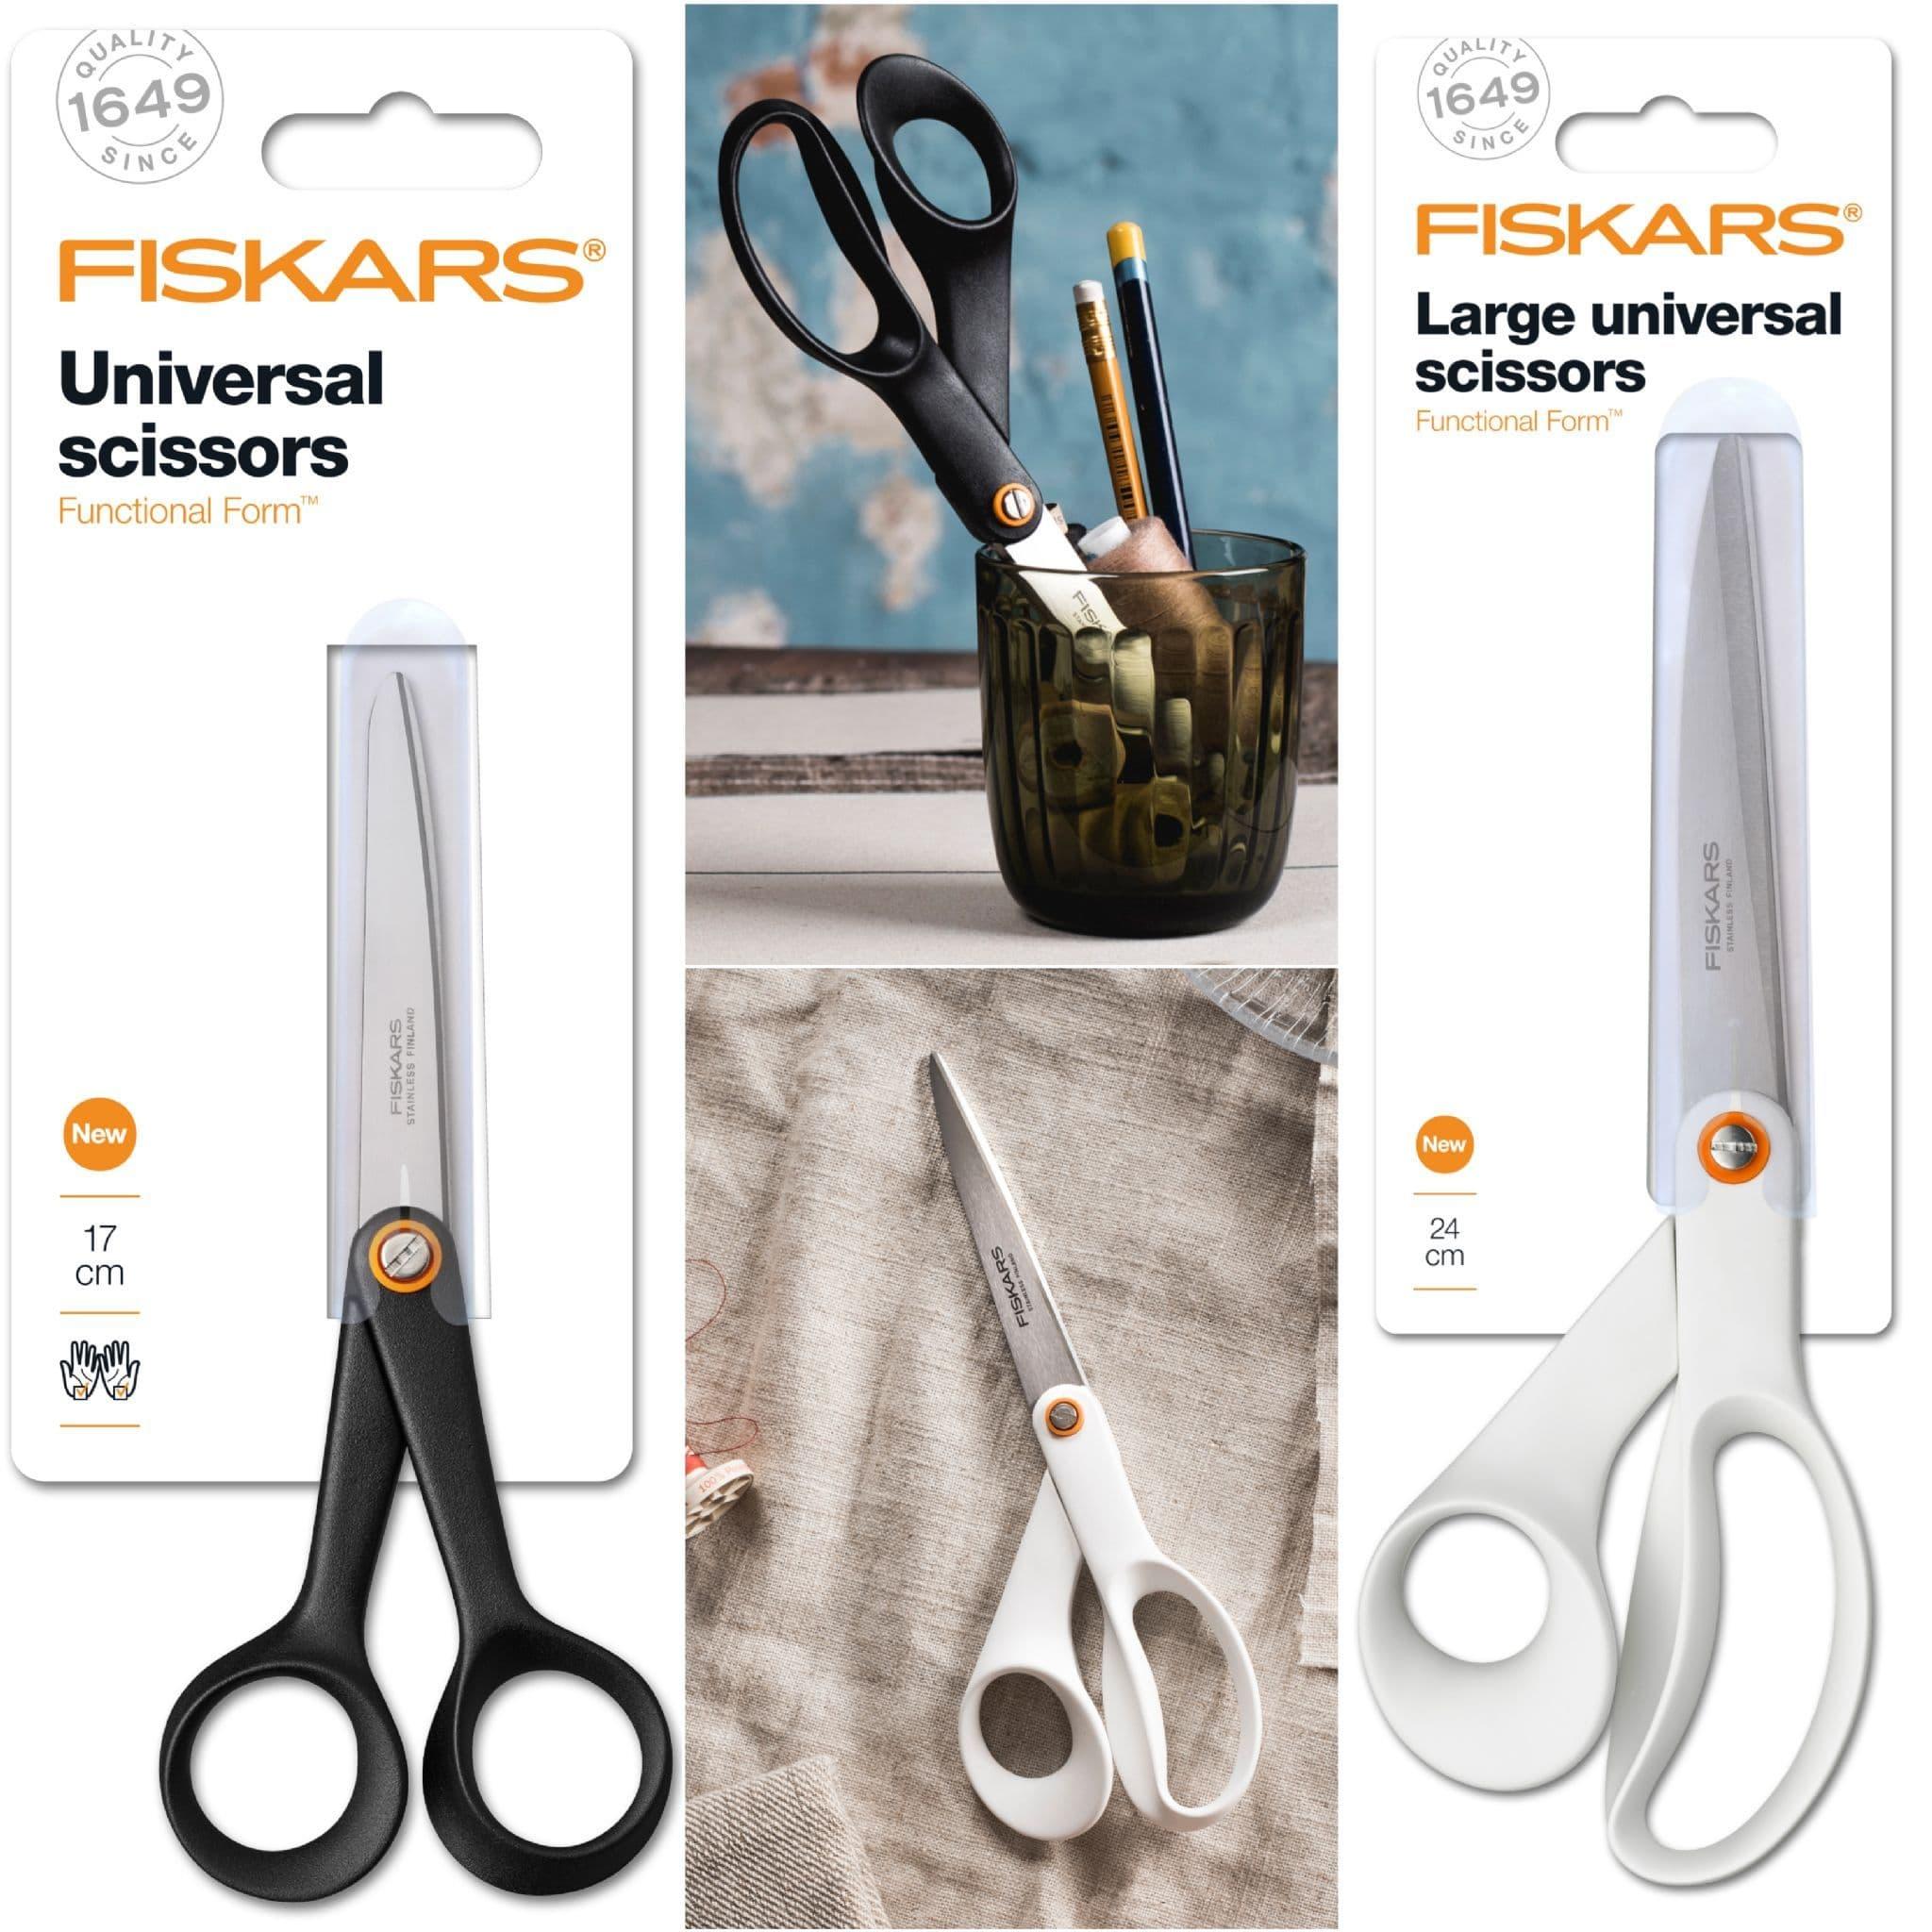 https://cdn.ecommercedns.uk/files/3/252923/1/28121701/fiskars-functional-form-universal-scissors-3-sizes-in-black-or-w.jpg